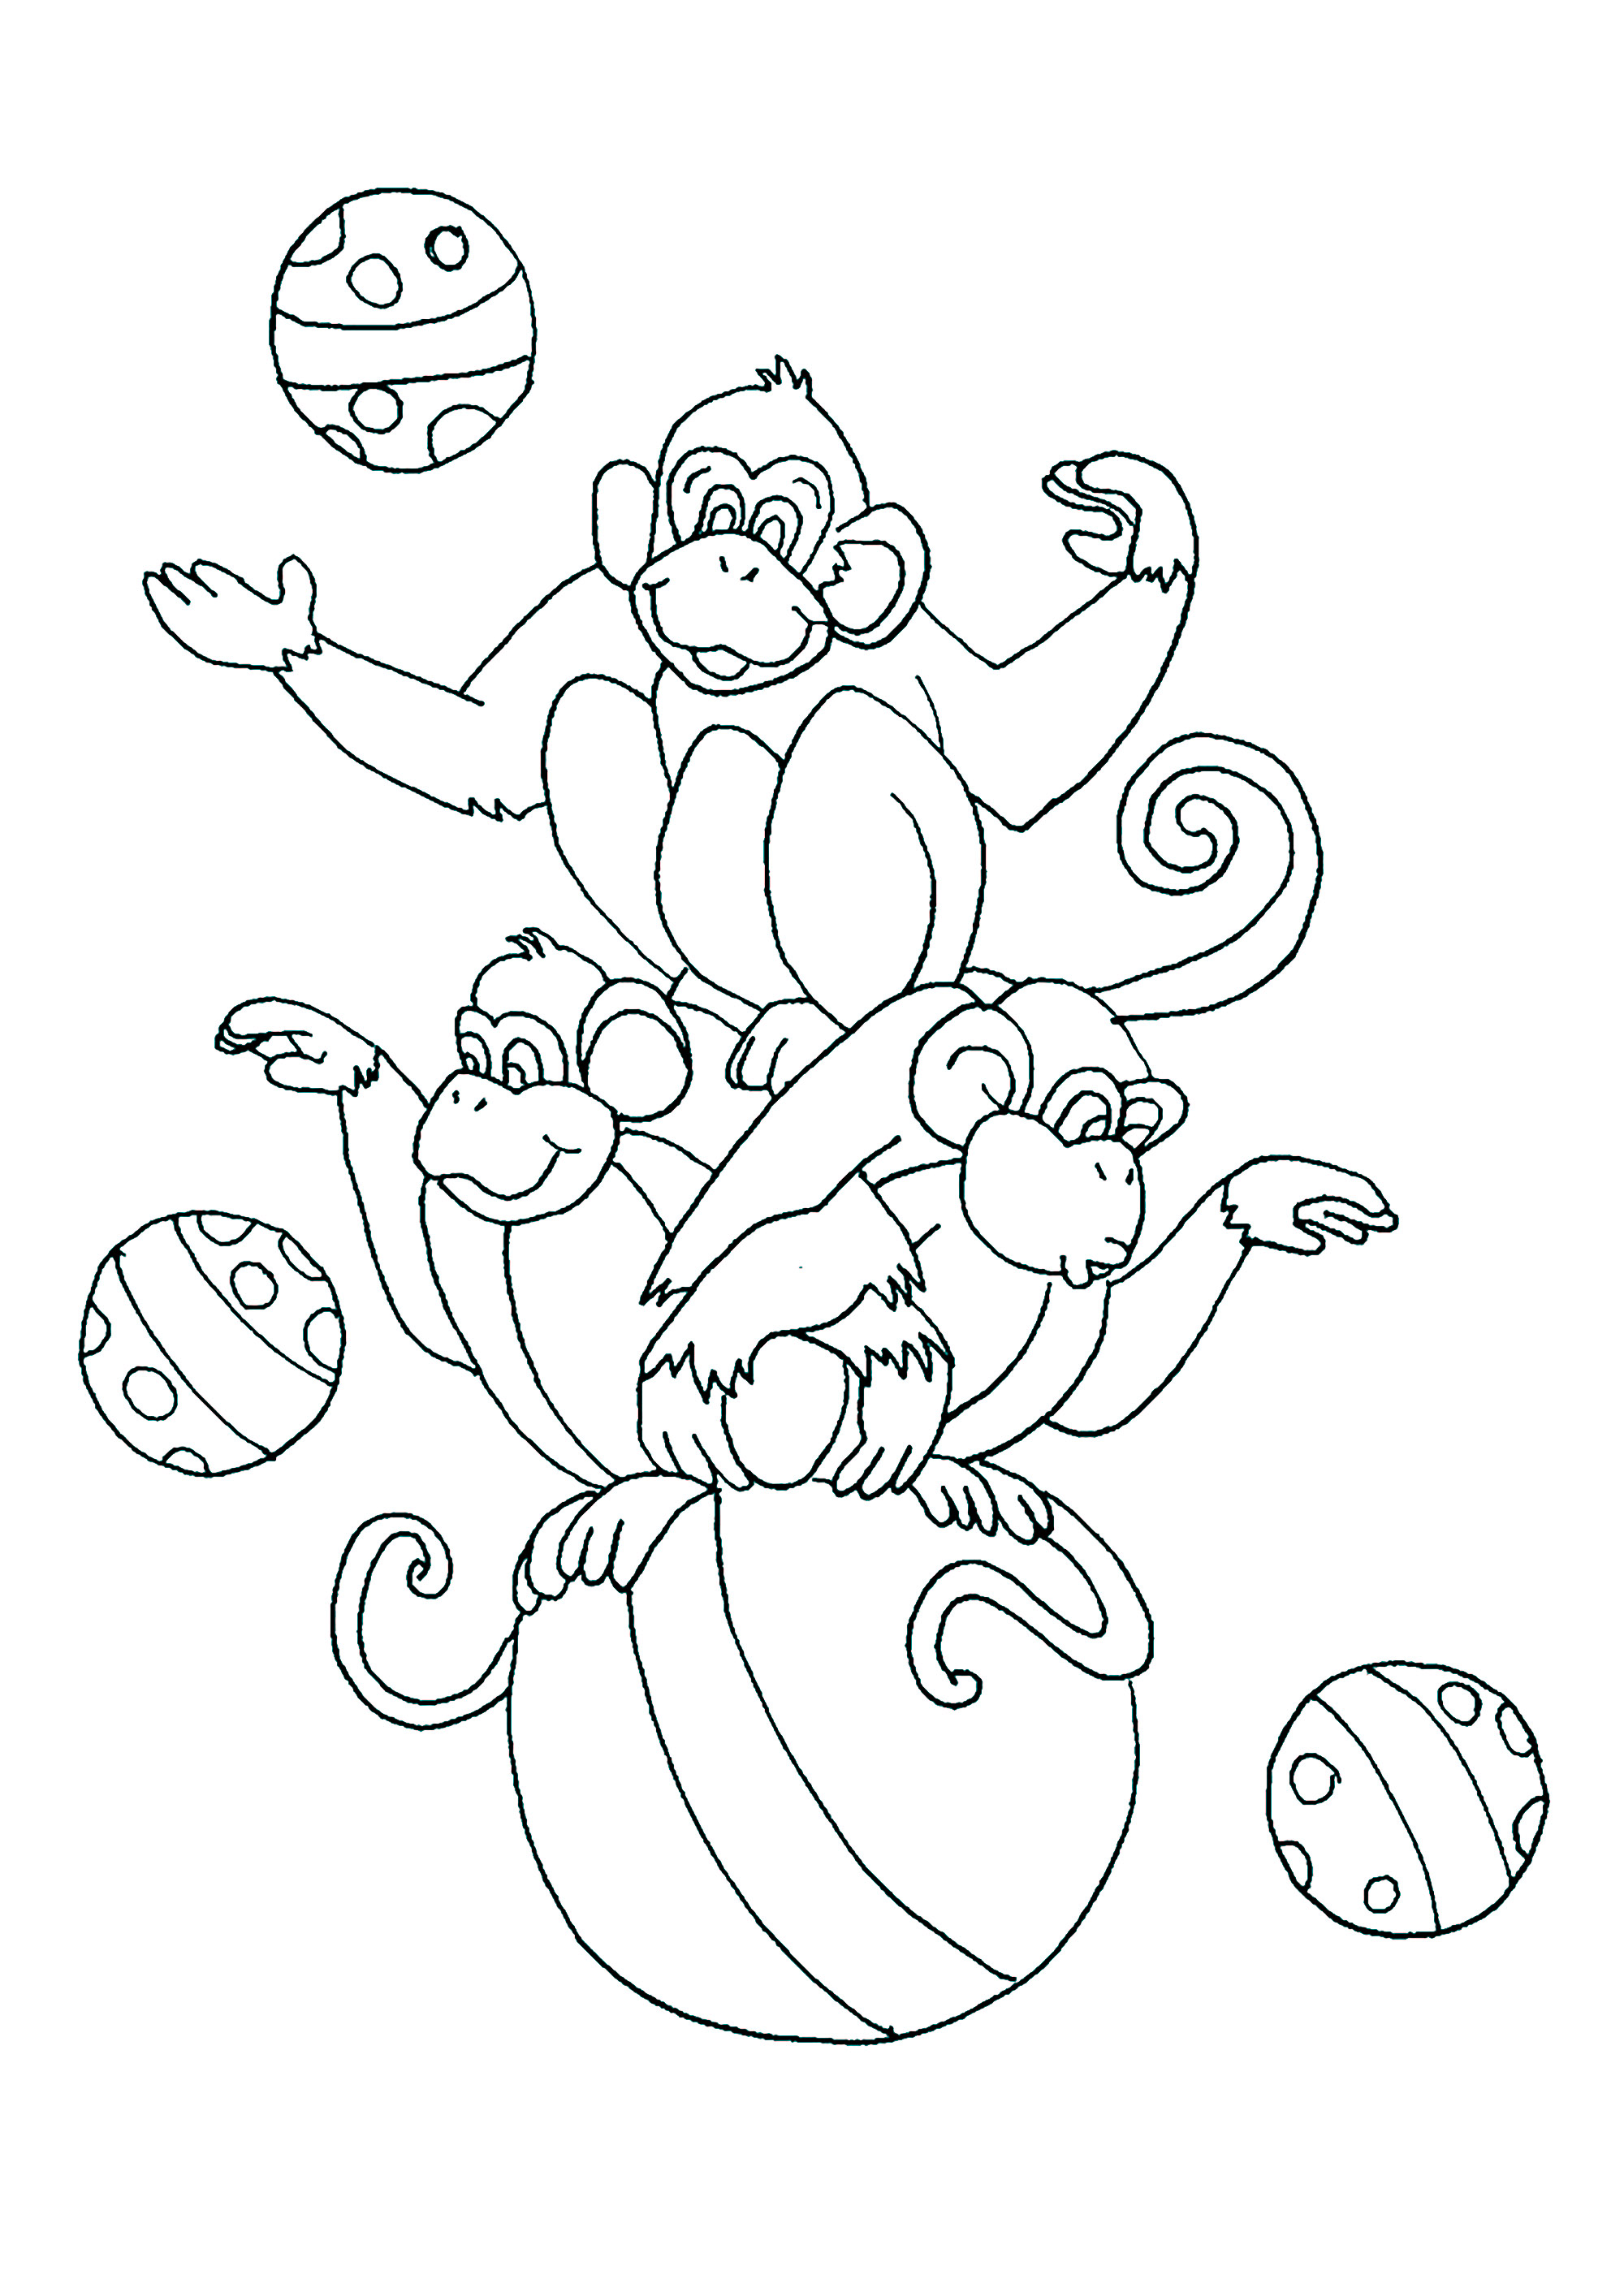 Macacos de circo, a brincar numa bola grande. Colorir estes três Macacos e todos os seus balões